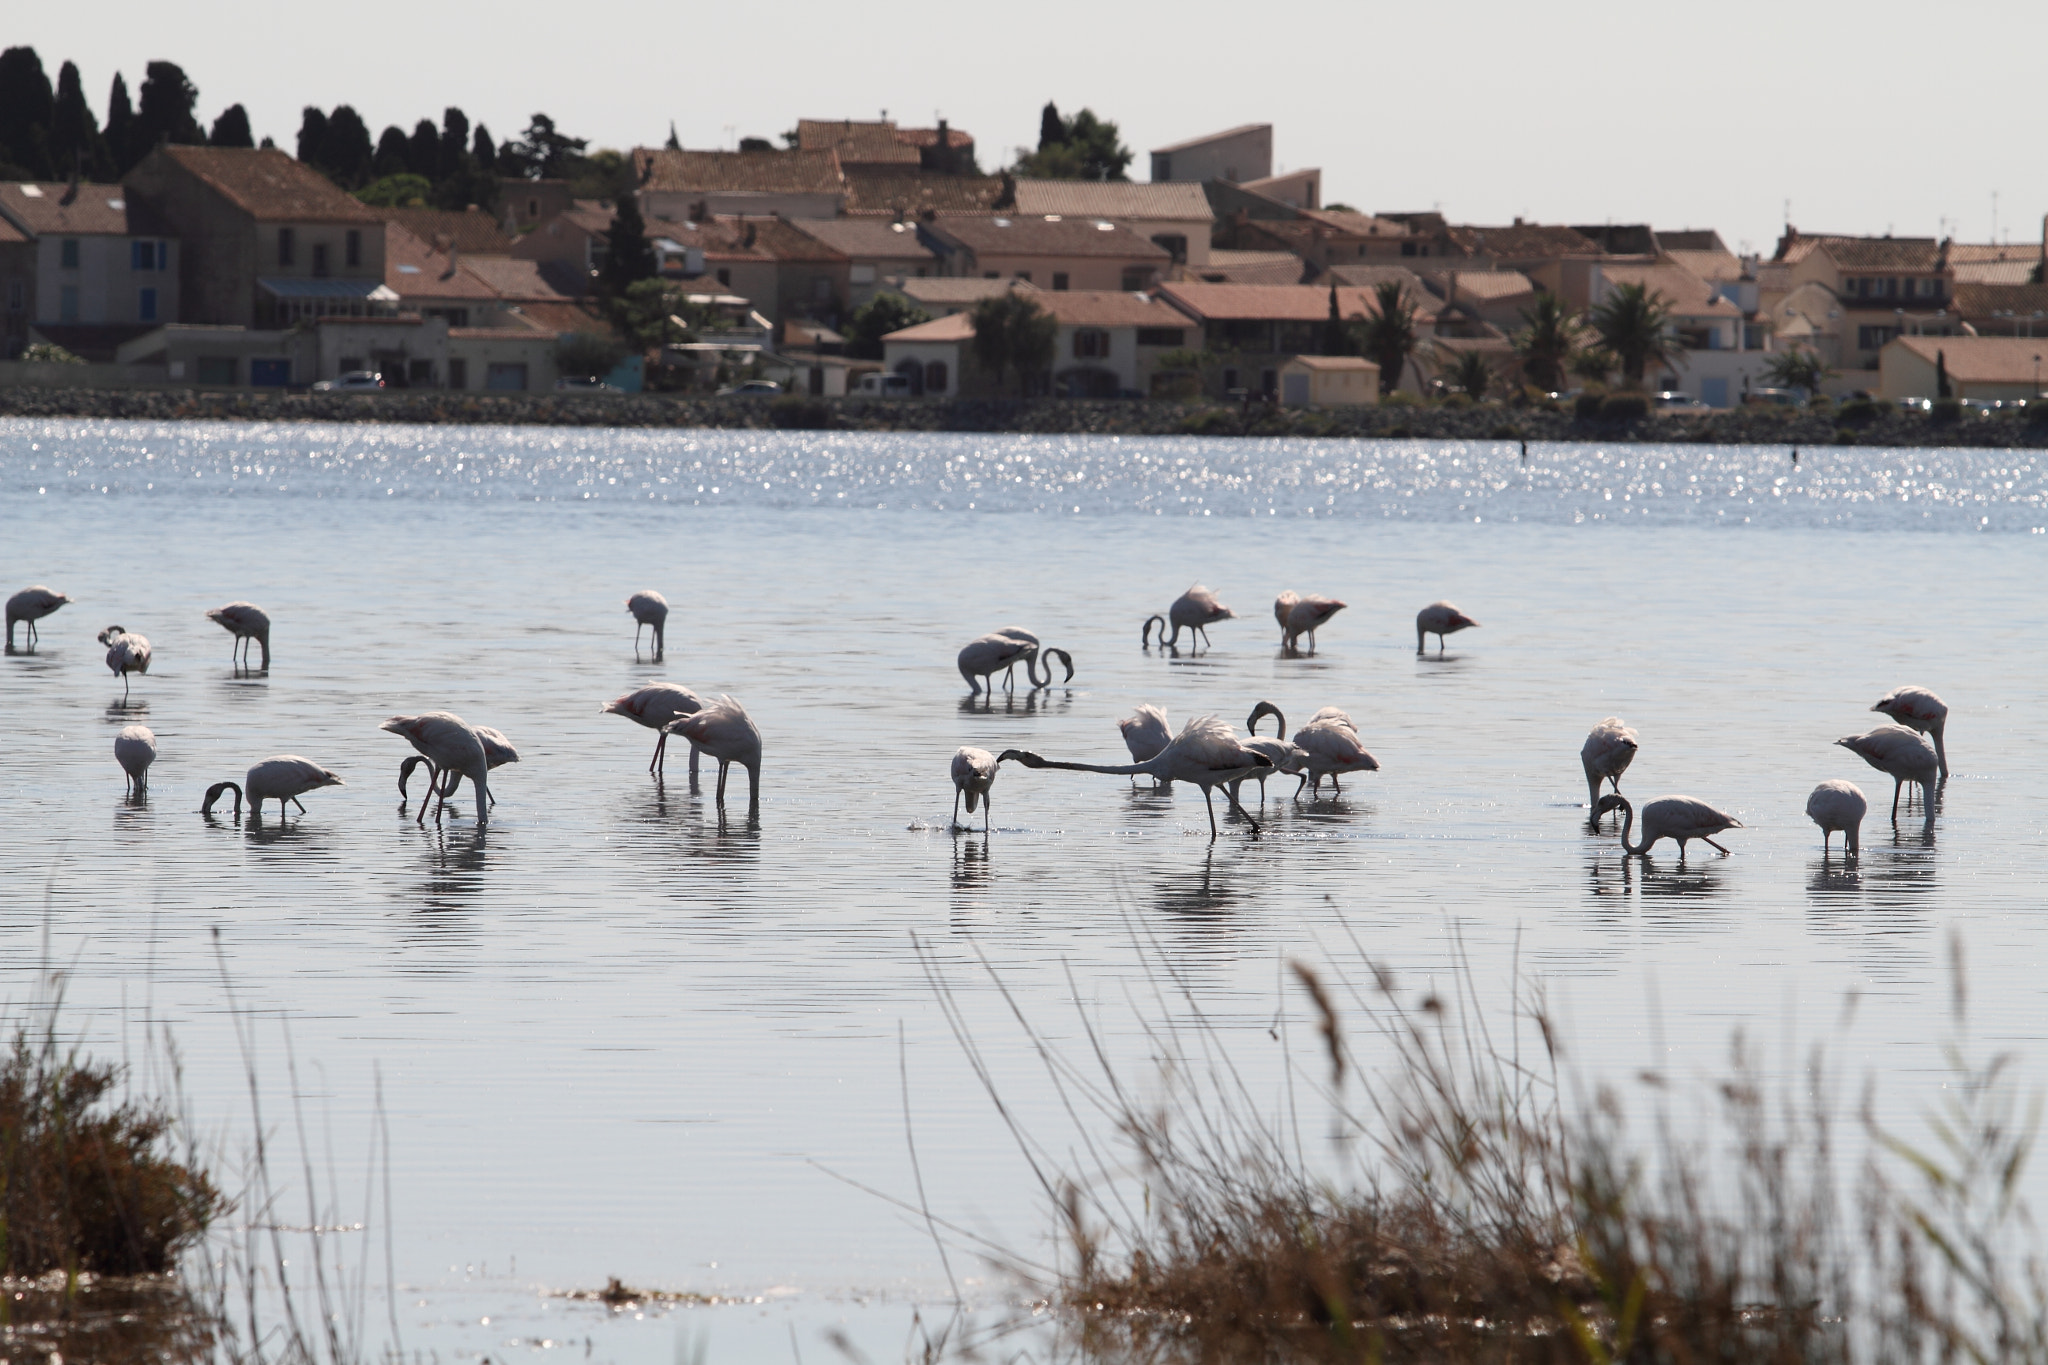 Canon EOS 7D sample photo. Flamingos photography